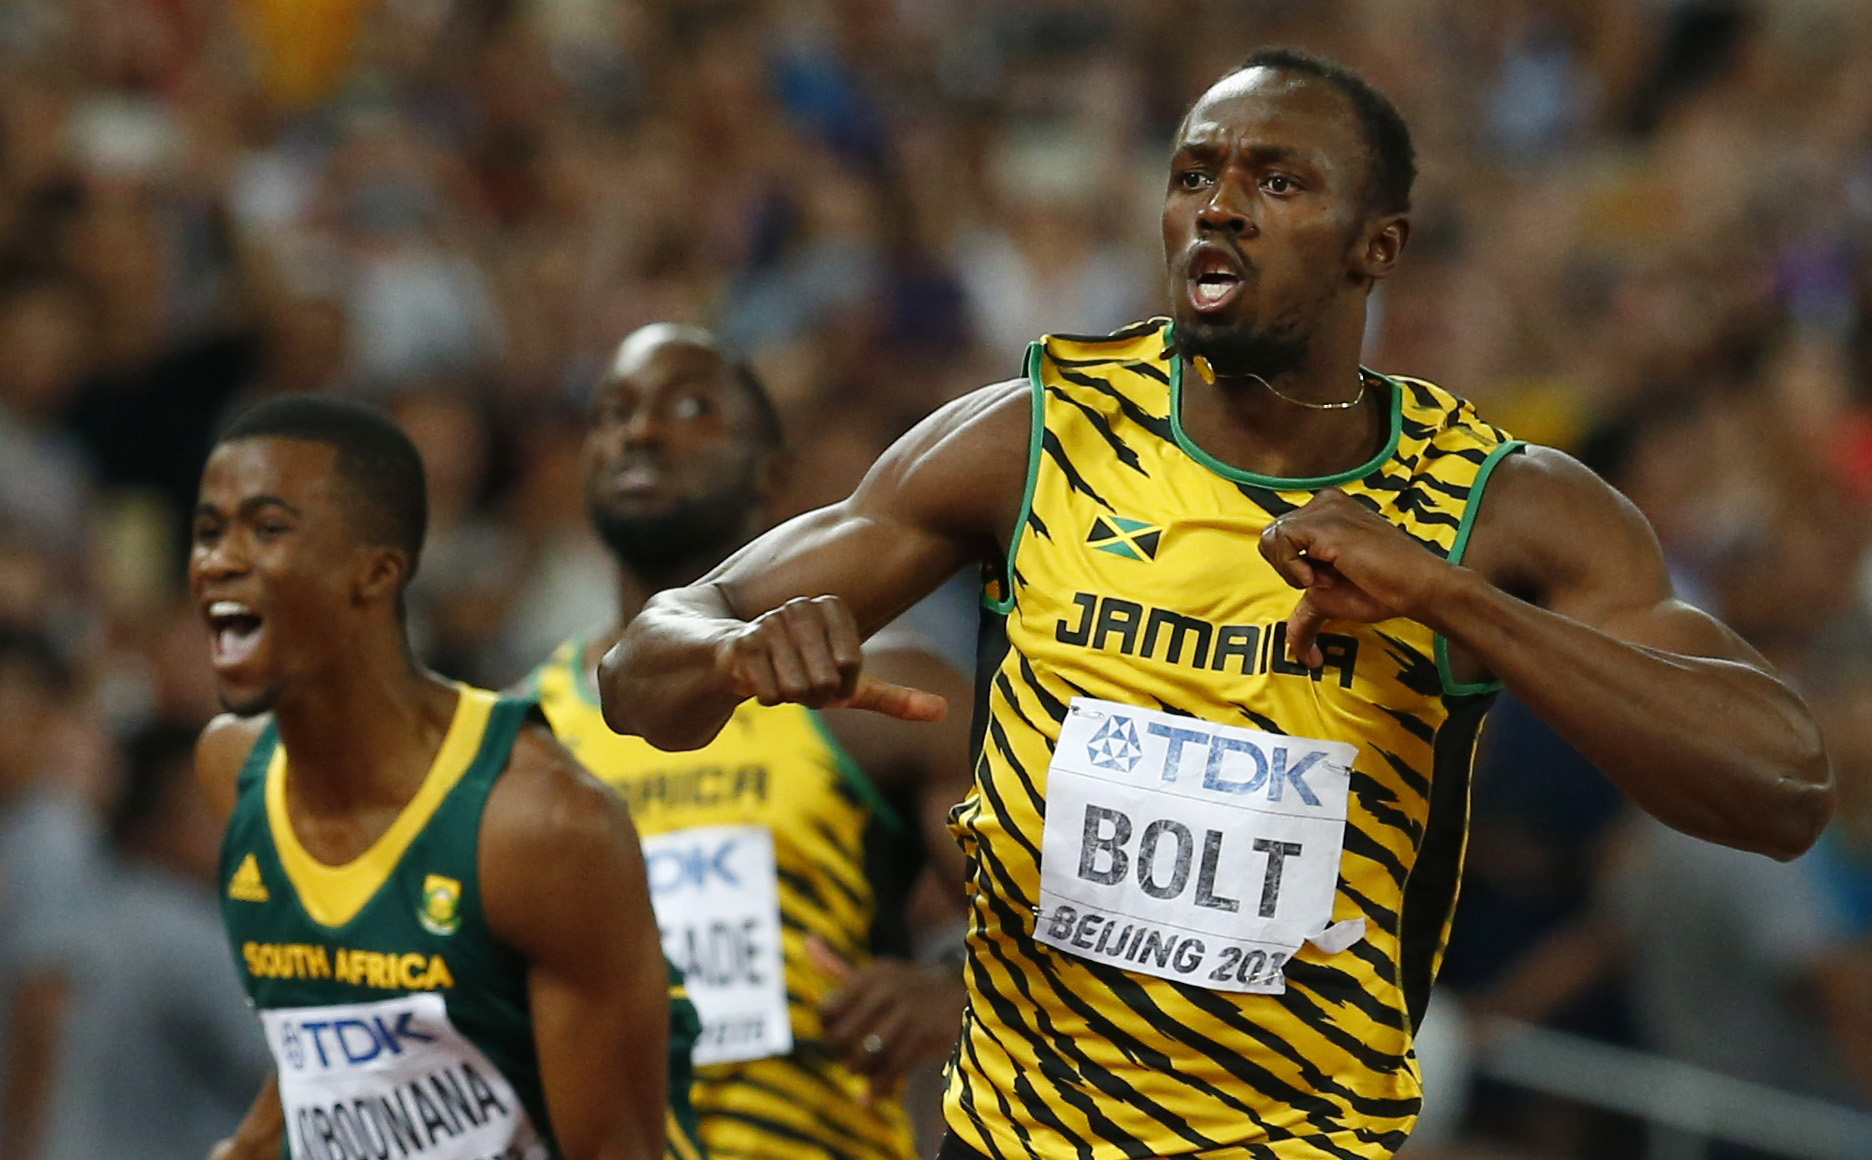 La vida continúa para un “decepcionado” Bolt tras perder una medalla olímpica